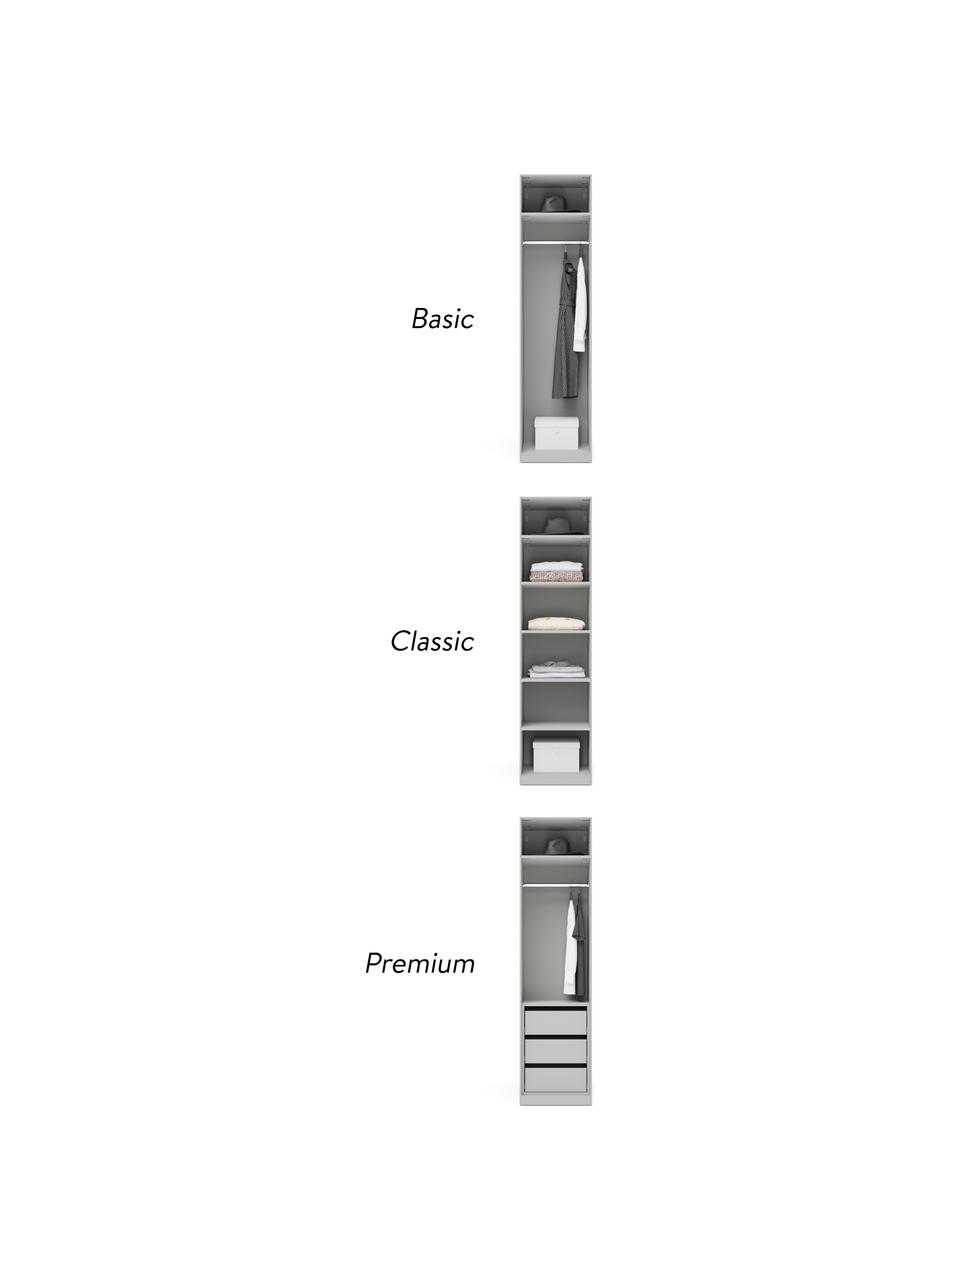 Modulaire draaideurkast Simone in grijs, 50 cm breed, diverse varianten, Frame: met melamine beklede spaa, Grijs, Basis interieur, hoogte 200 cm